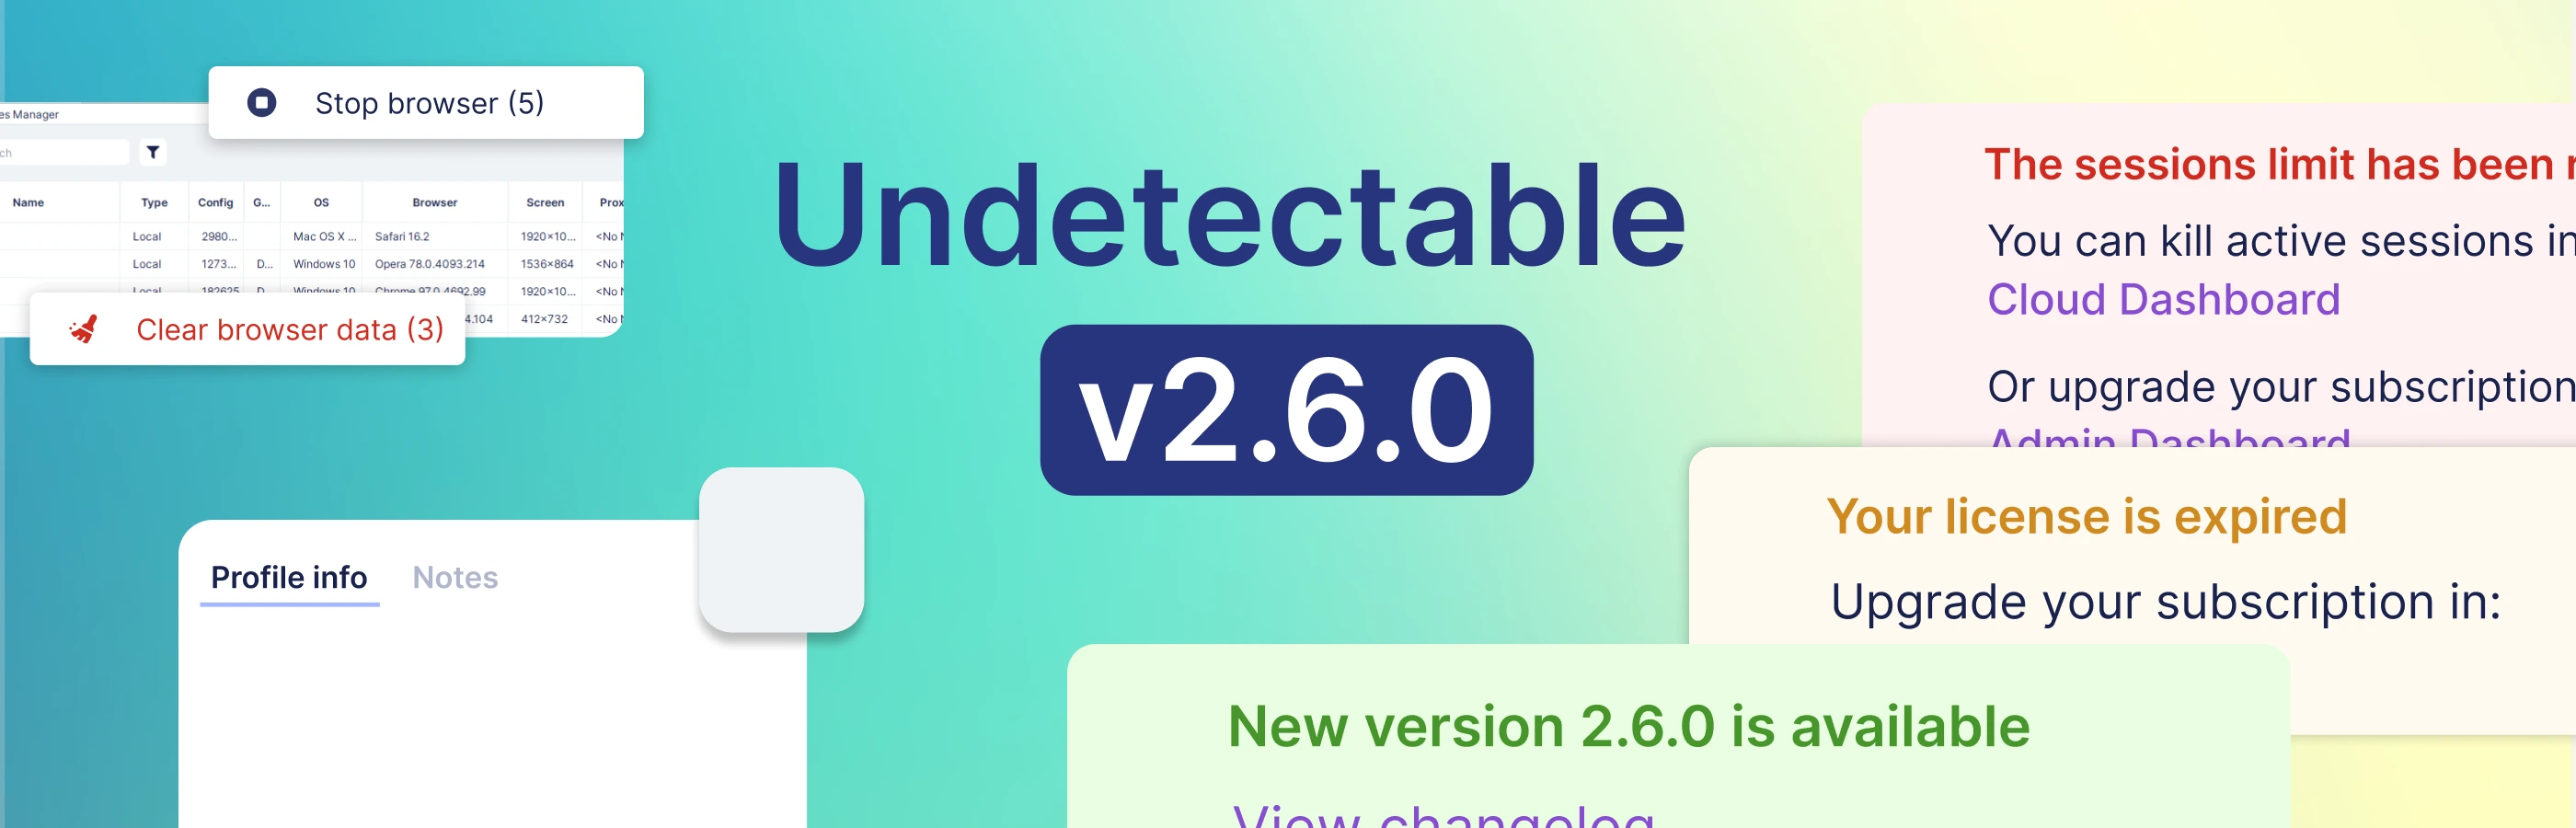 Atualização v2.6.0 Cookies-bot no Chromium e nova interface